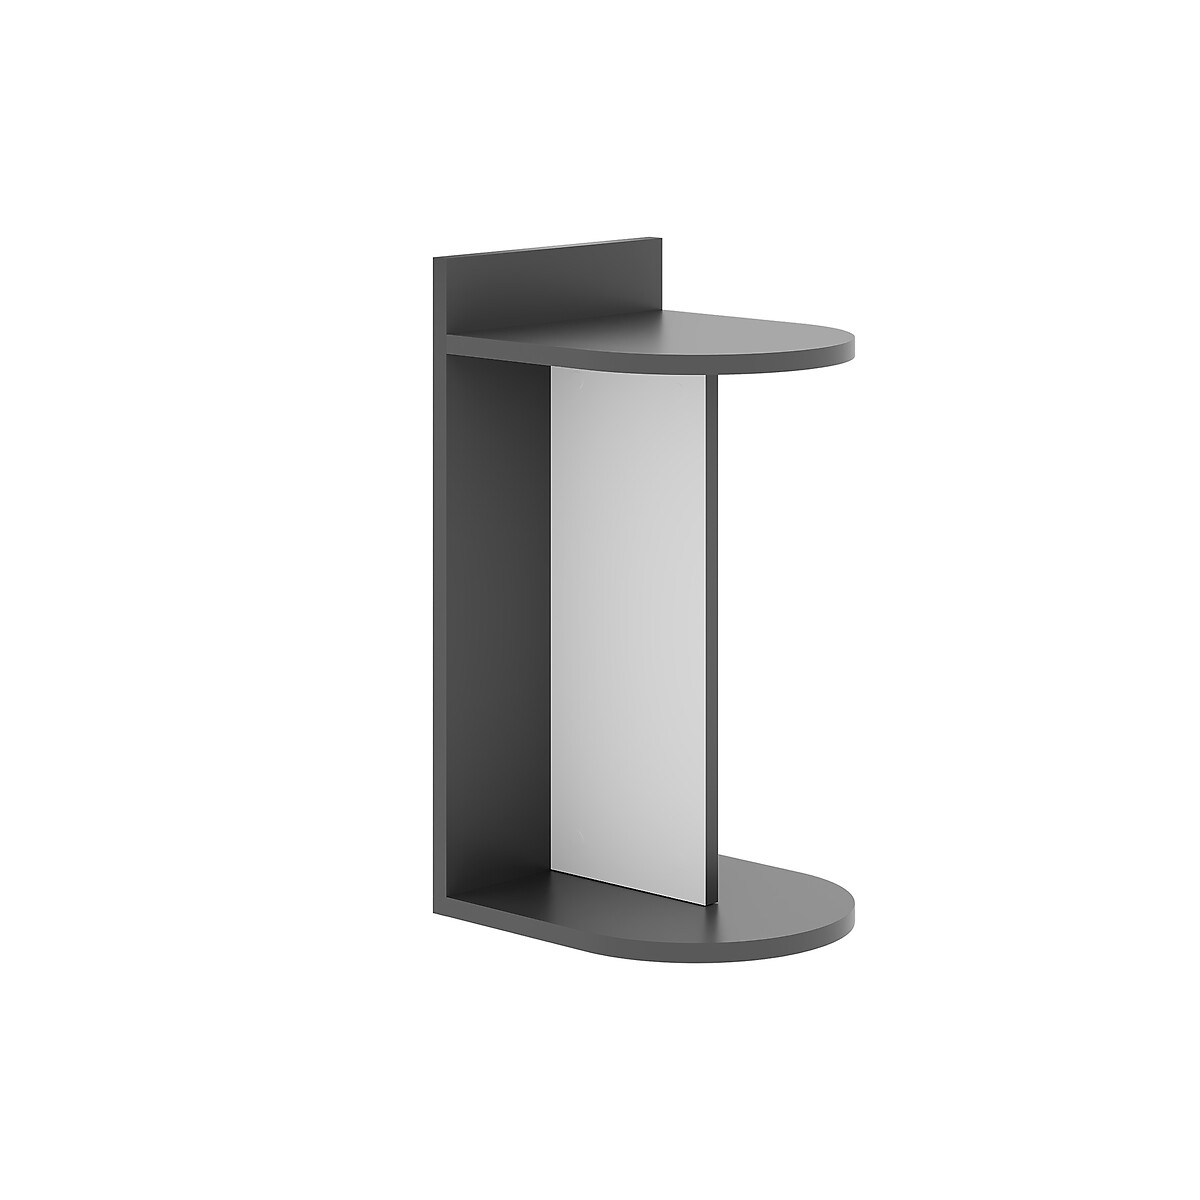 Стол приставной DOM SIDE TABLE единый размер серый аксессуары для мебели вырастайка стол приставной к стулу сдн 3 в1